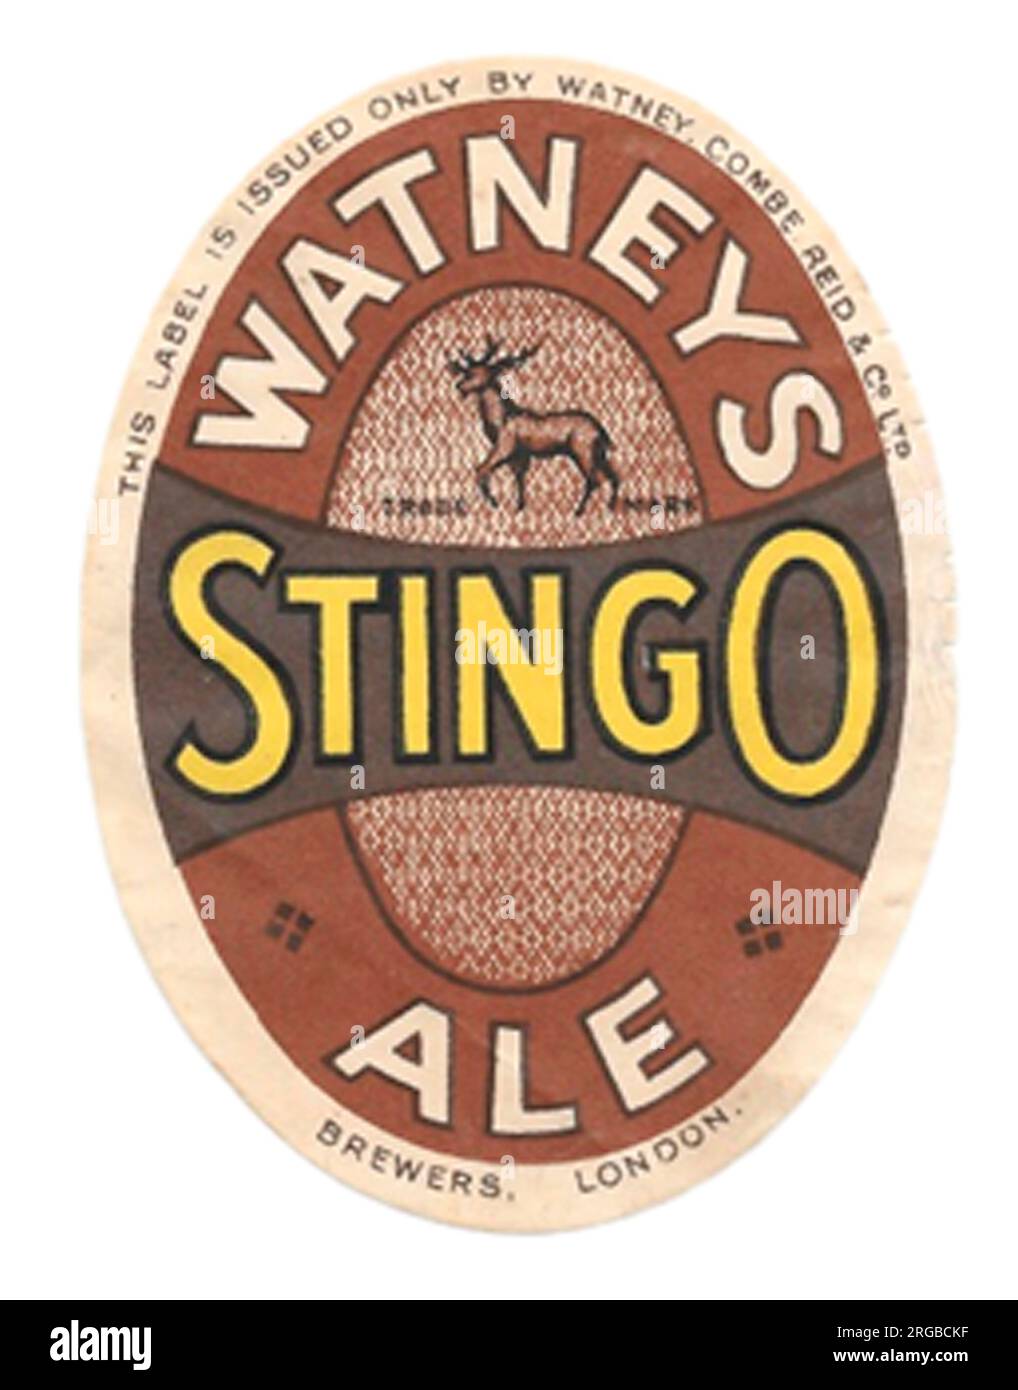 Watneys Stingo Ale Stock Photo